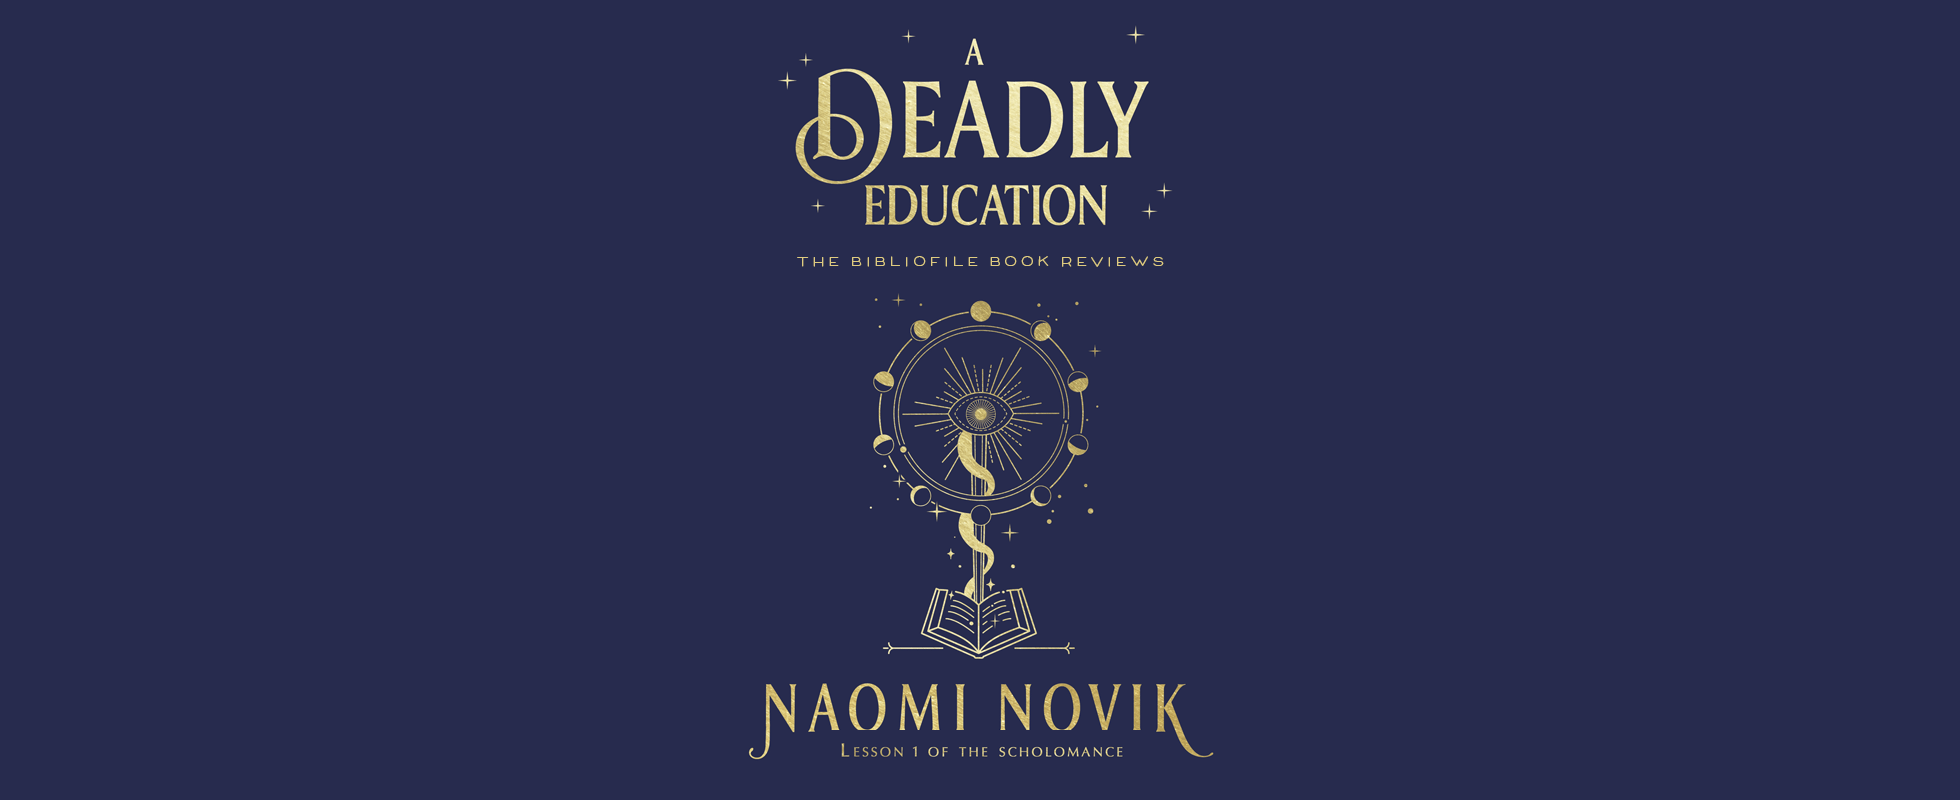 致命教育Naomi Novik图书评论情节摘要概要概要章节摘要摘要